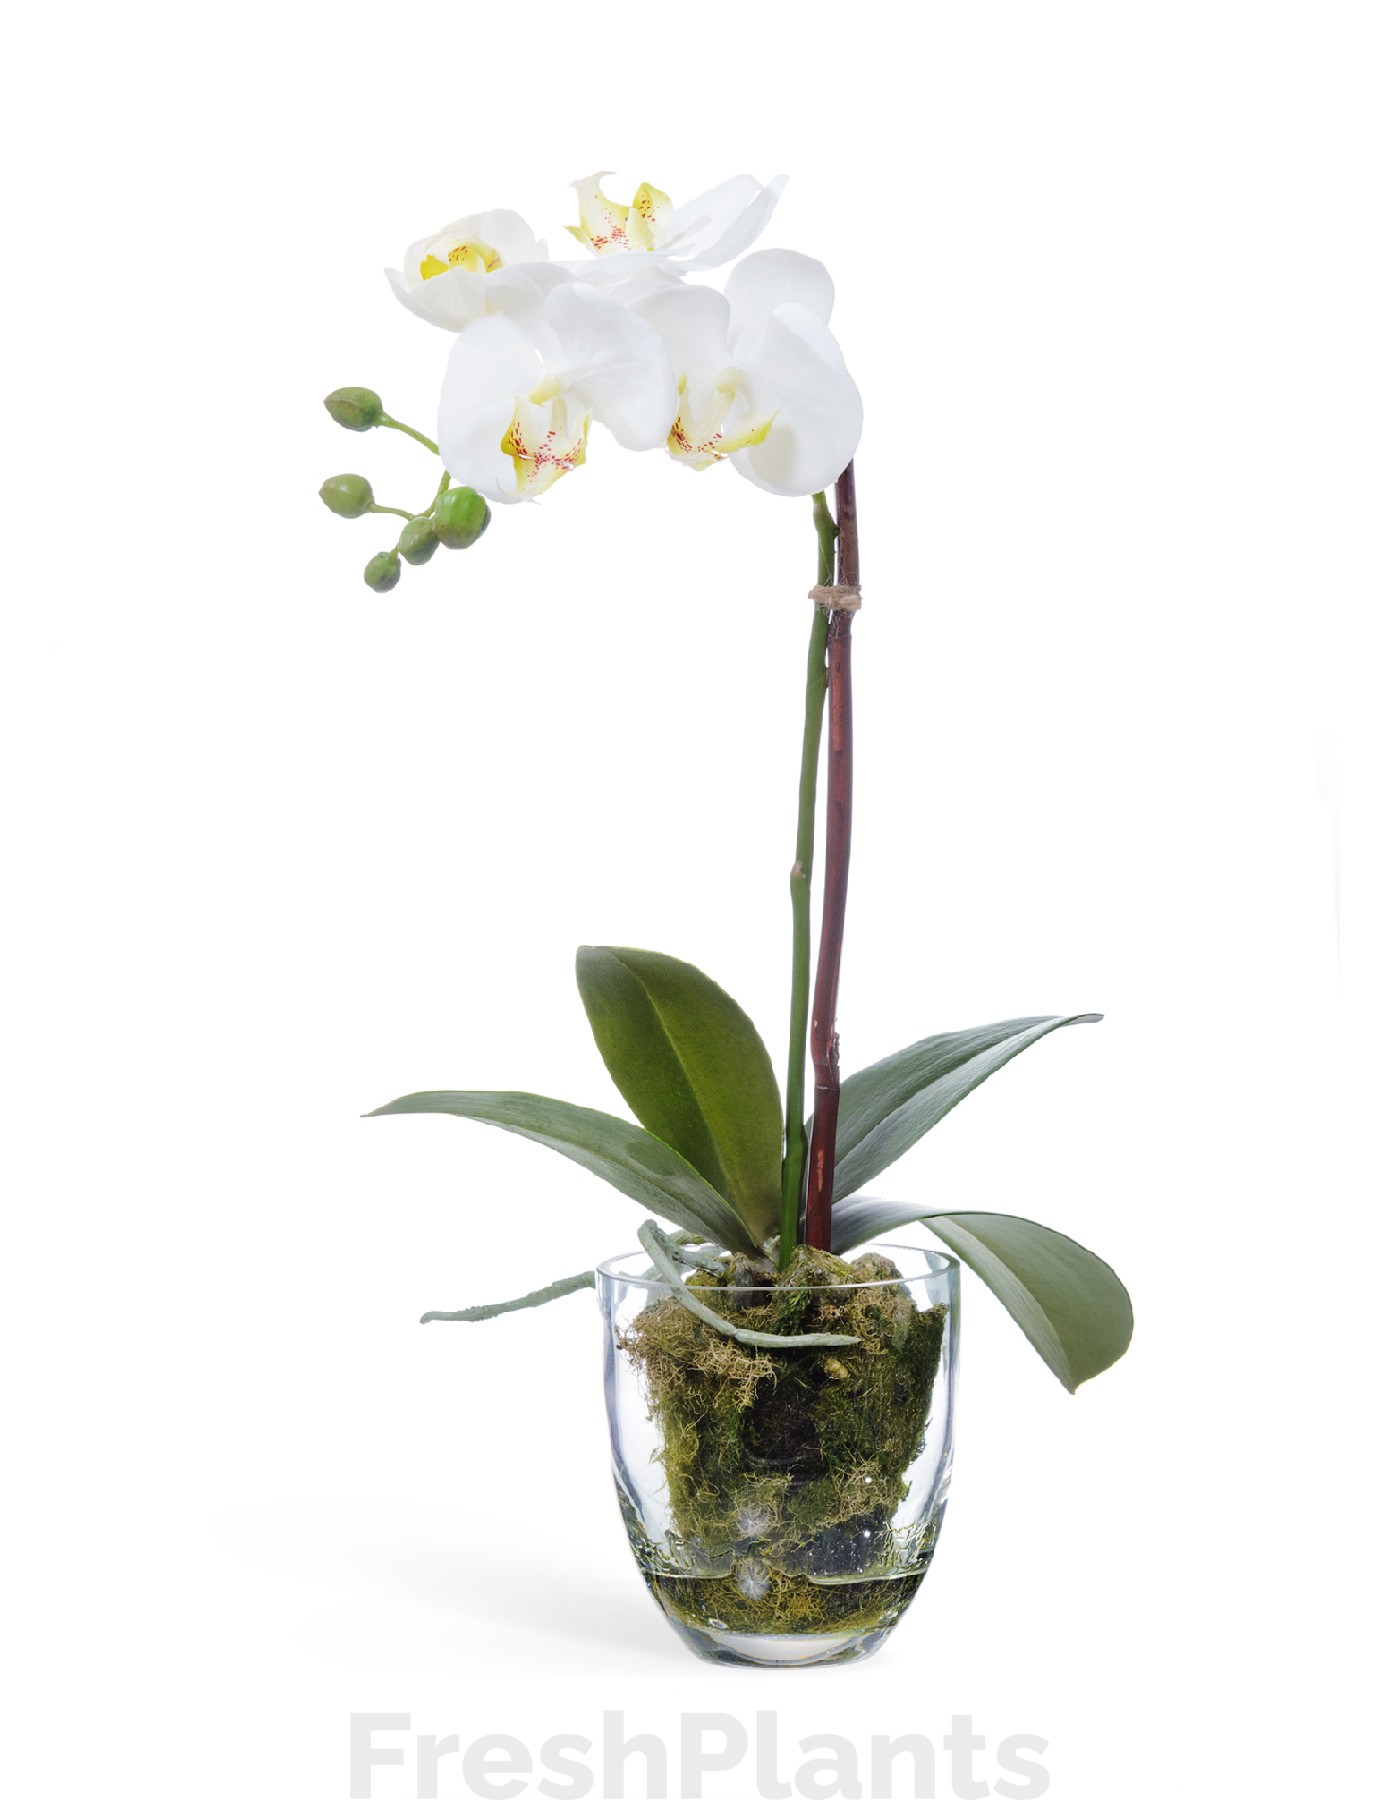 Орхидея Фаленопсис белая с мхом корнями землёй искусственная 10.0611066WHGL40